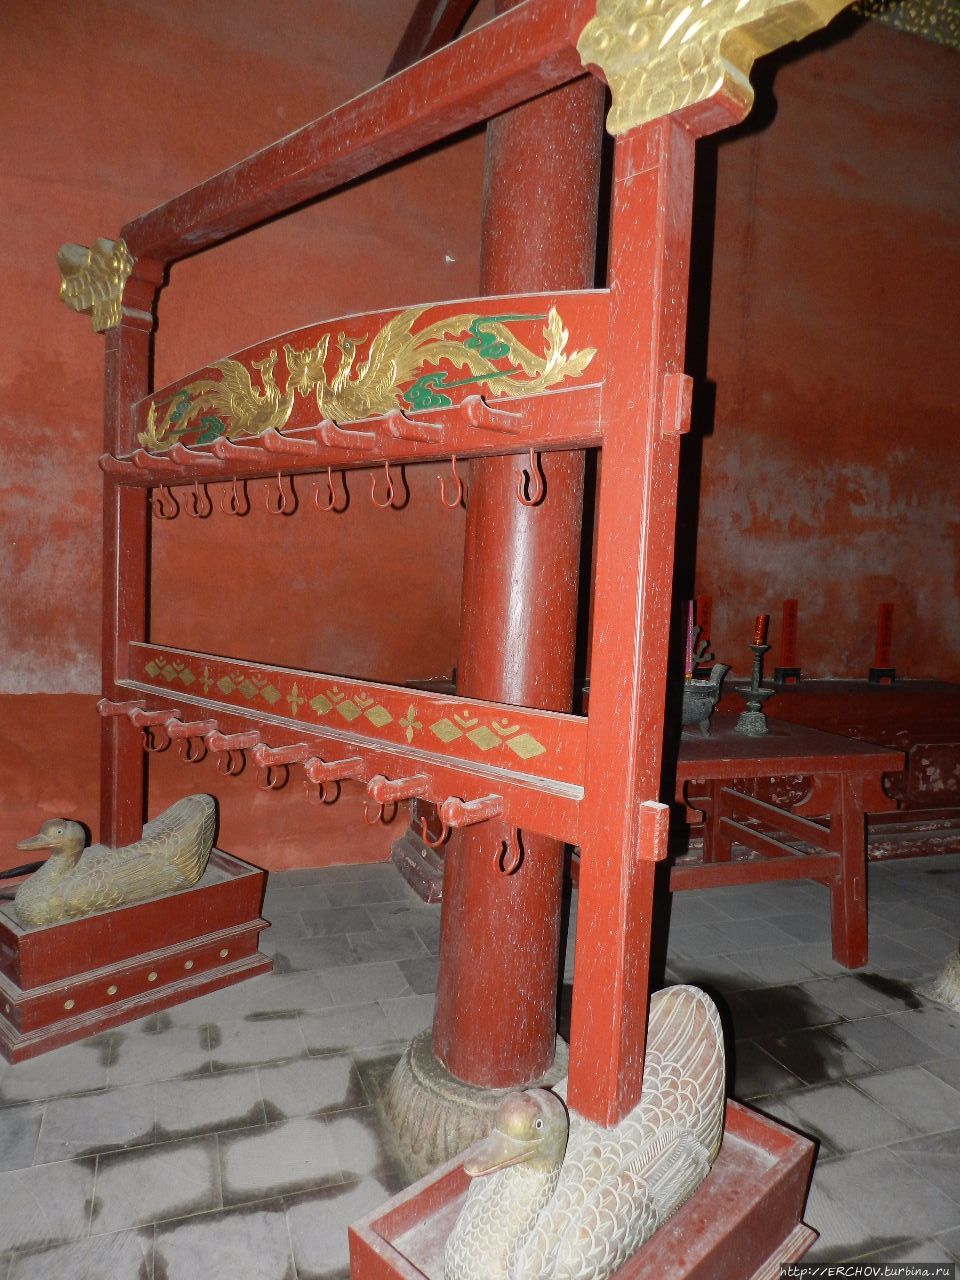 Древний город Ячжоу  崖州古城 Ячжоу, Китай